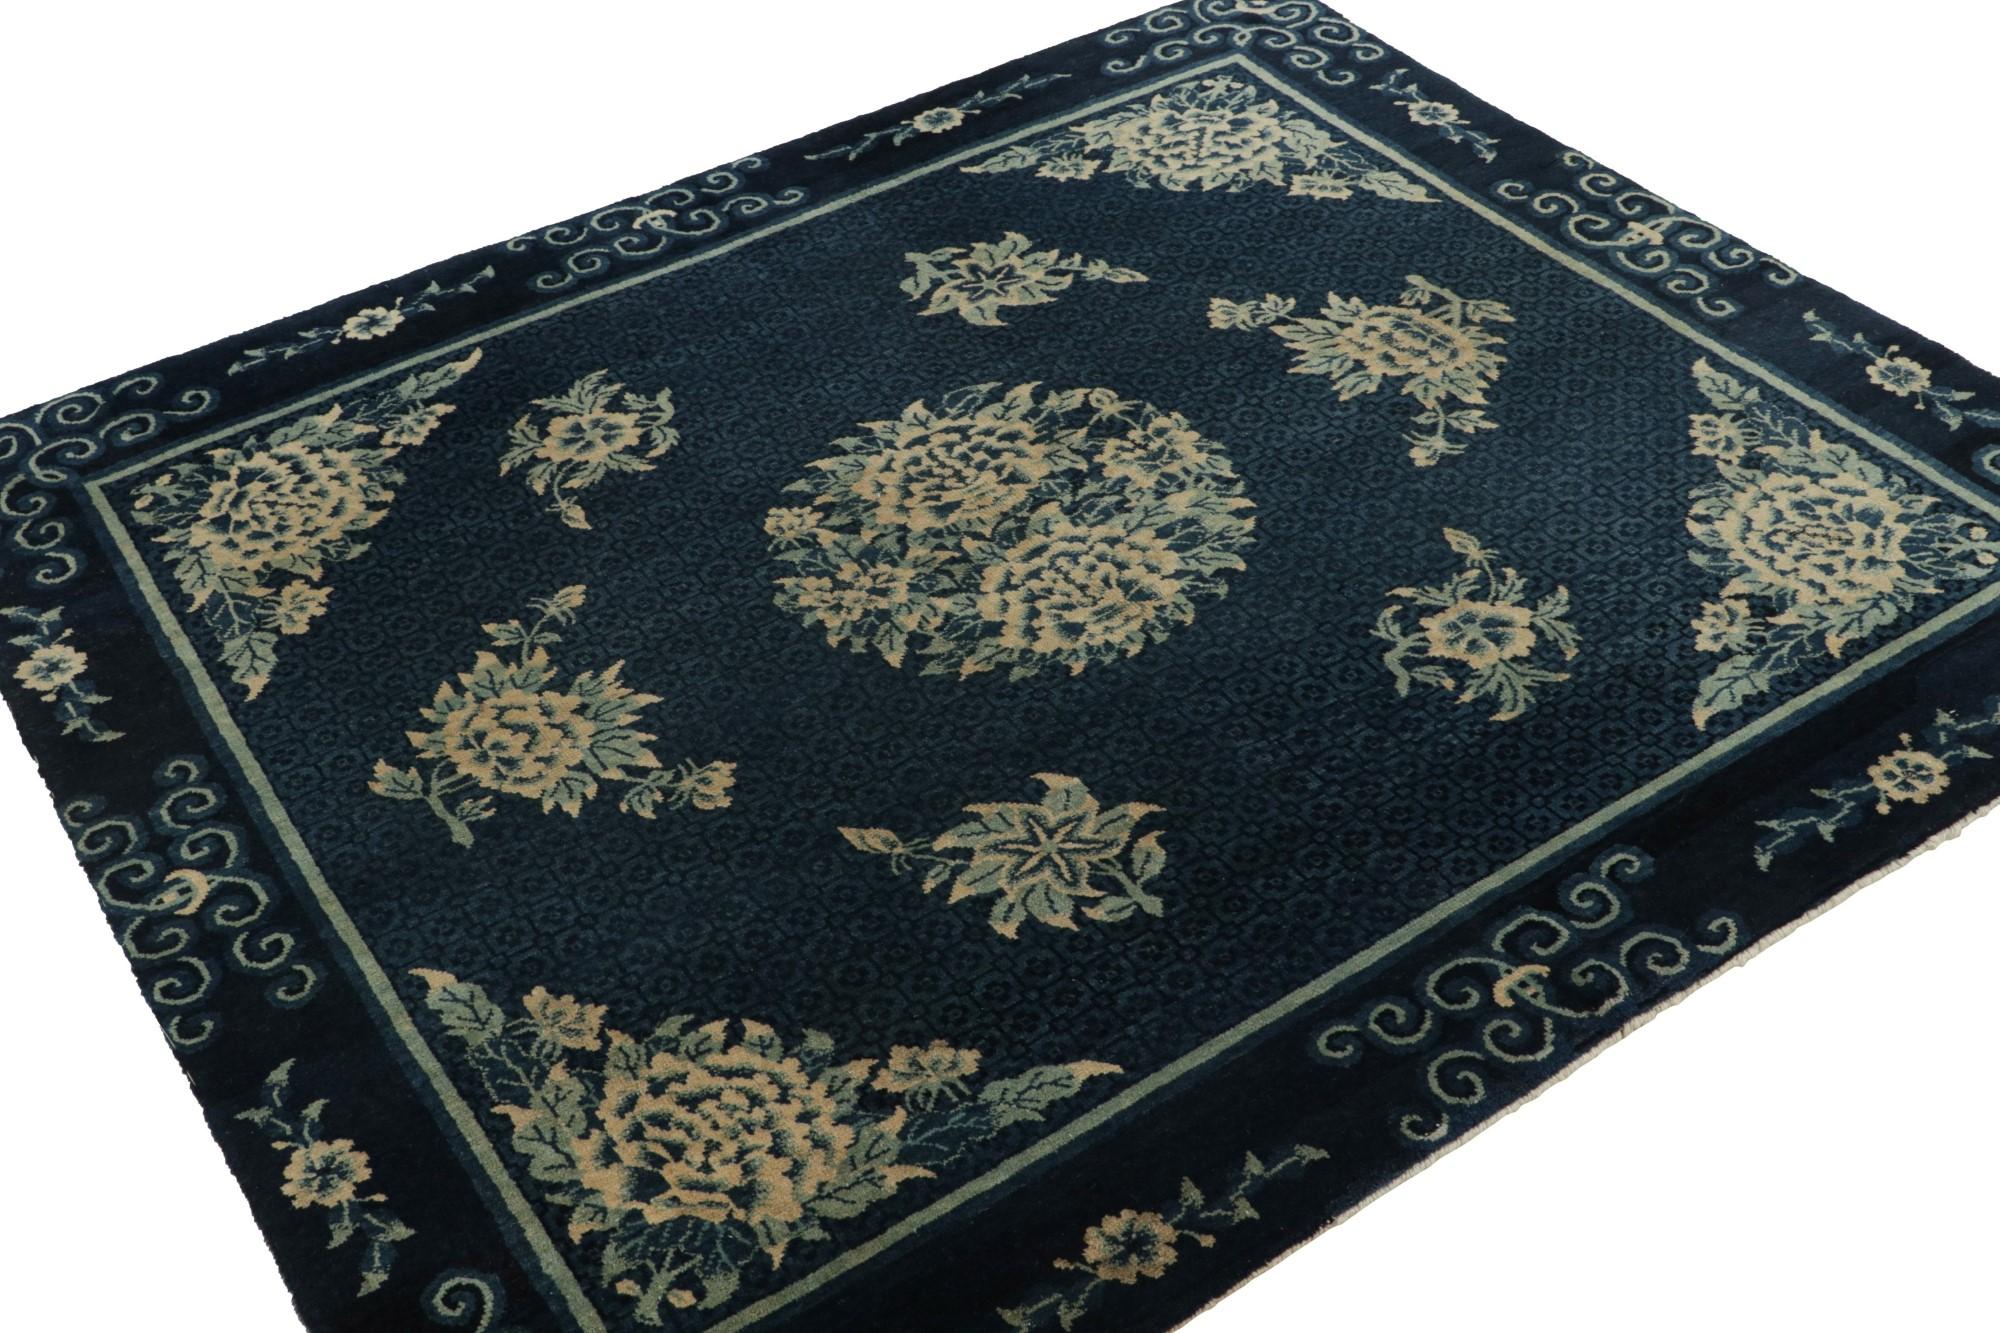 Un splendide tapis de Pékin 5x6 d'une antiquité chinoise recherchée dans un motif floral traditionnel de style pékinois. 

Sur le Design :

Noué à la main en laine vers 1920-1930, le design présente une représentation de l'art traditionnel de